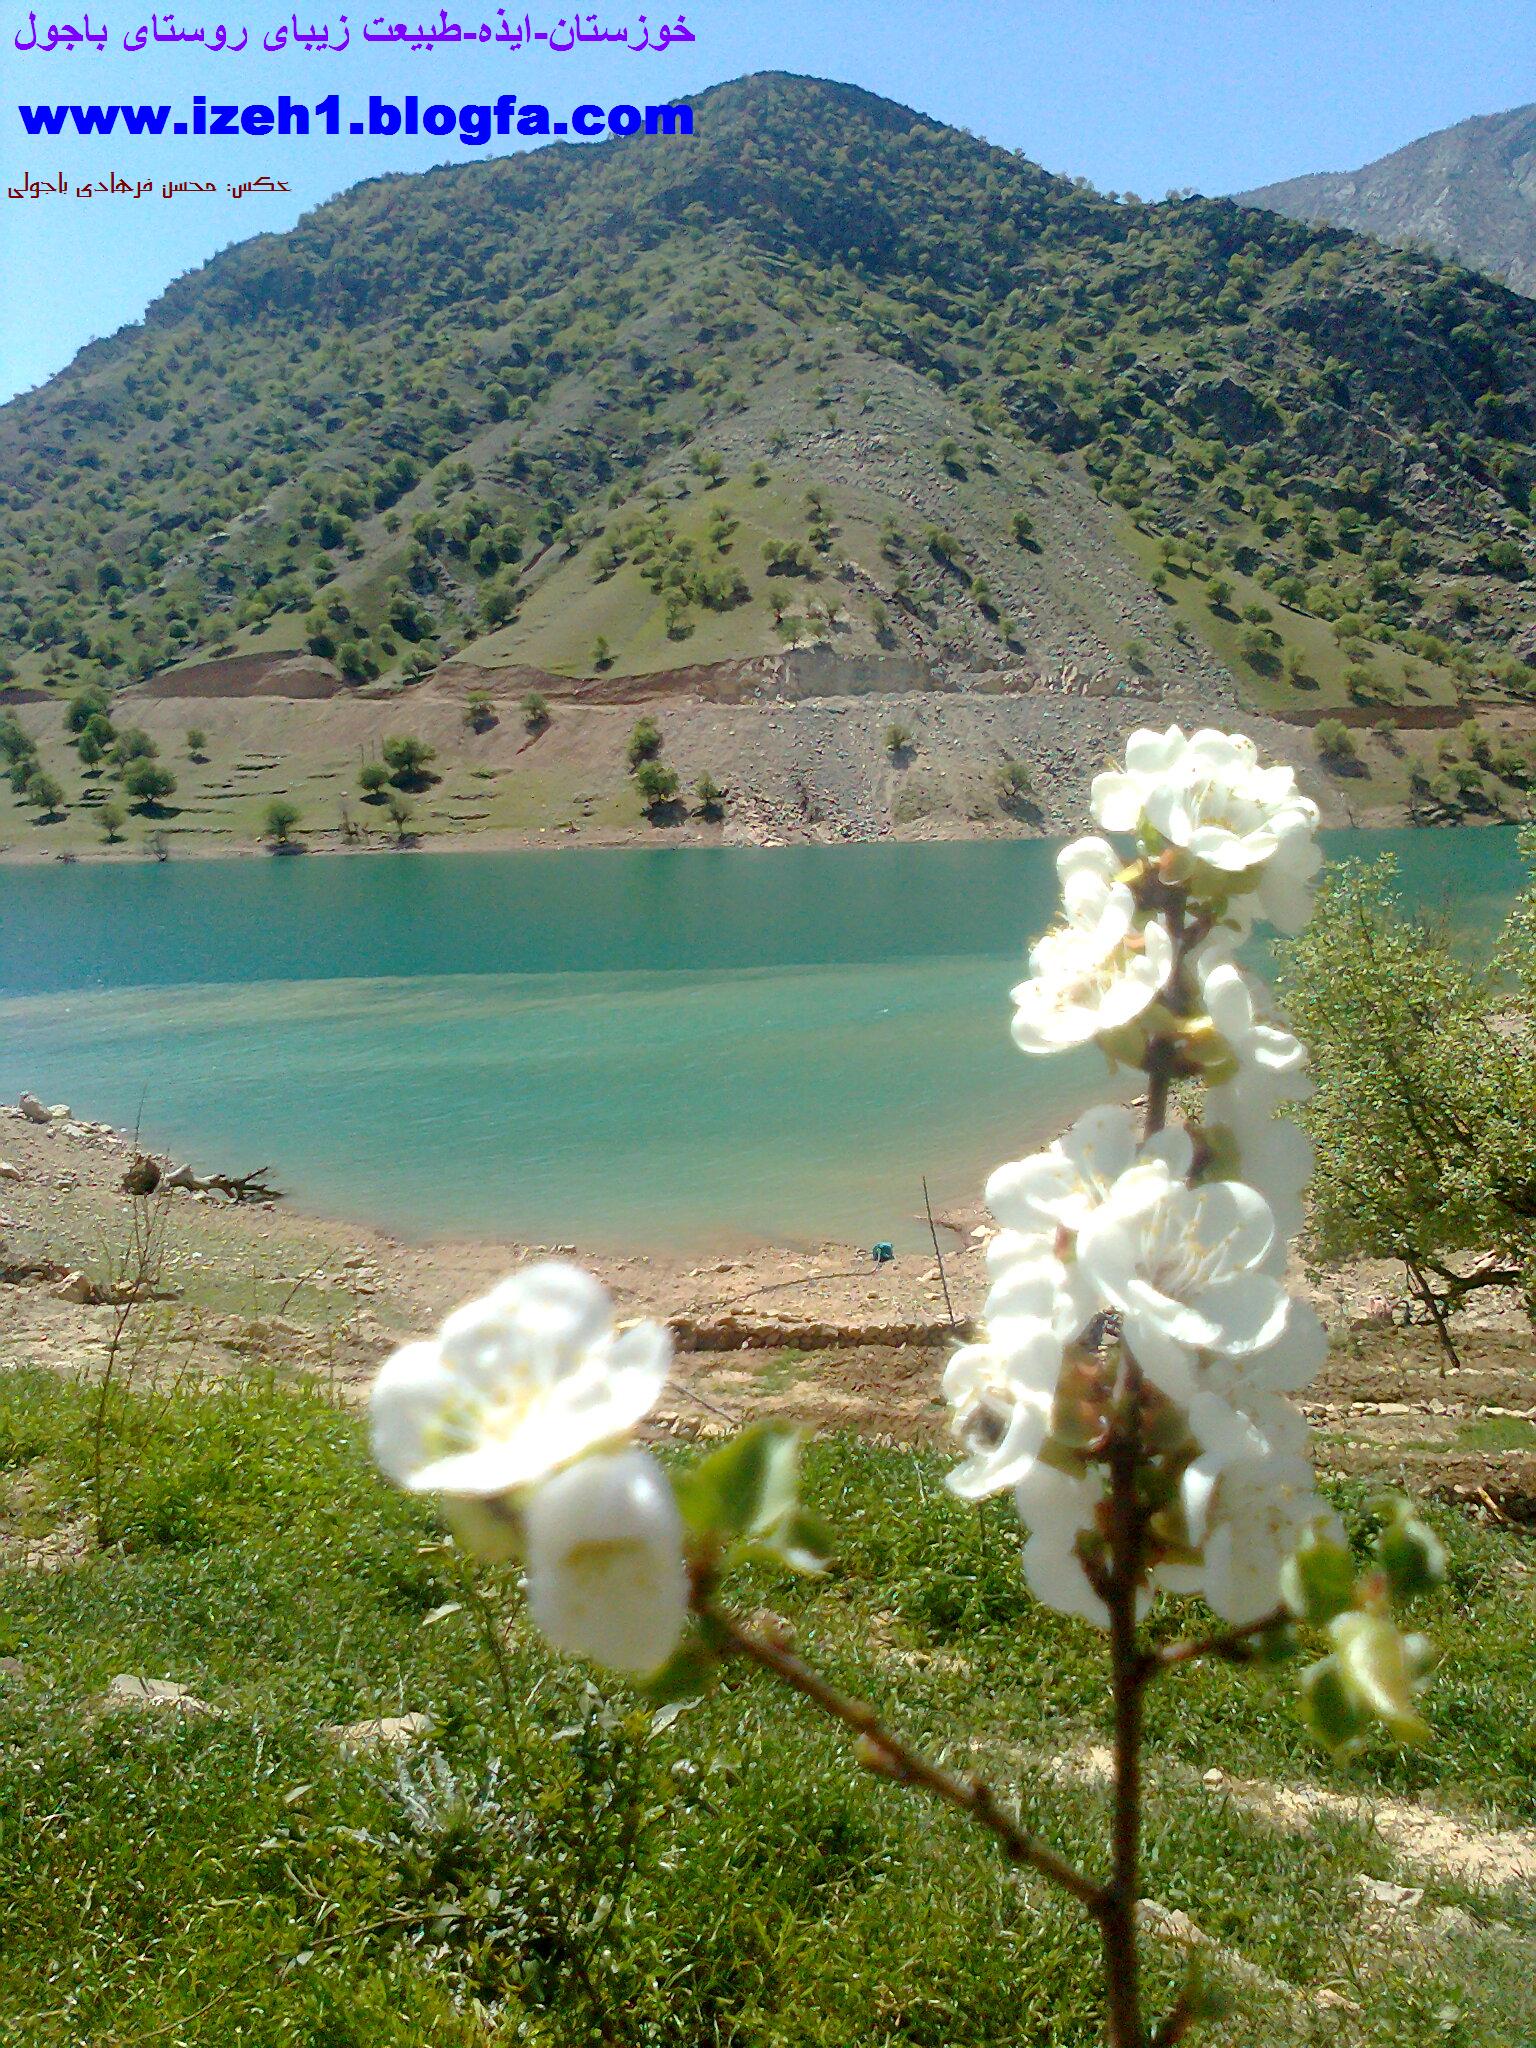 طبیعت زیبای روستای باجول (شهرستان ایذه)